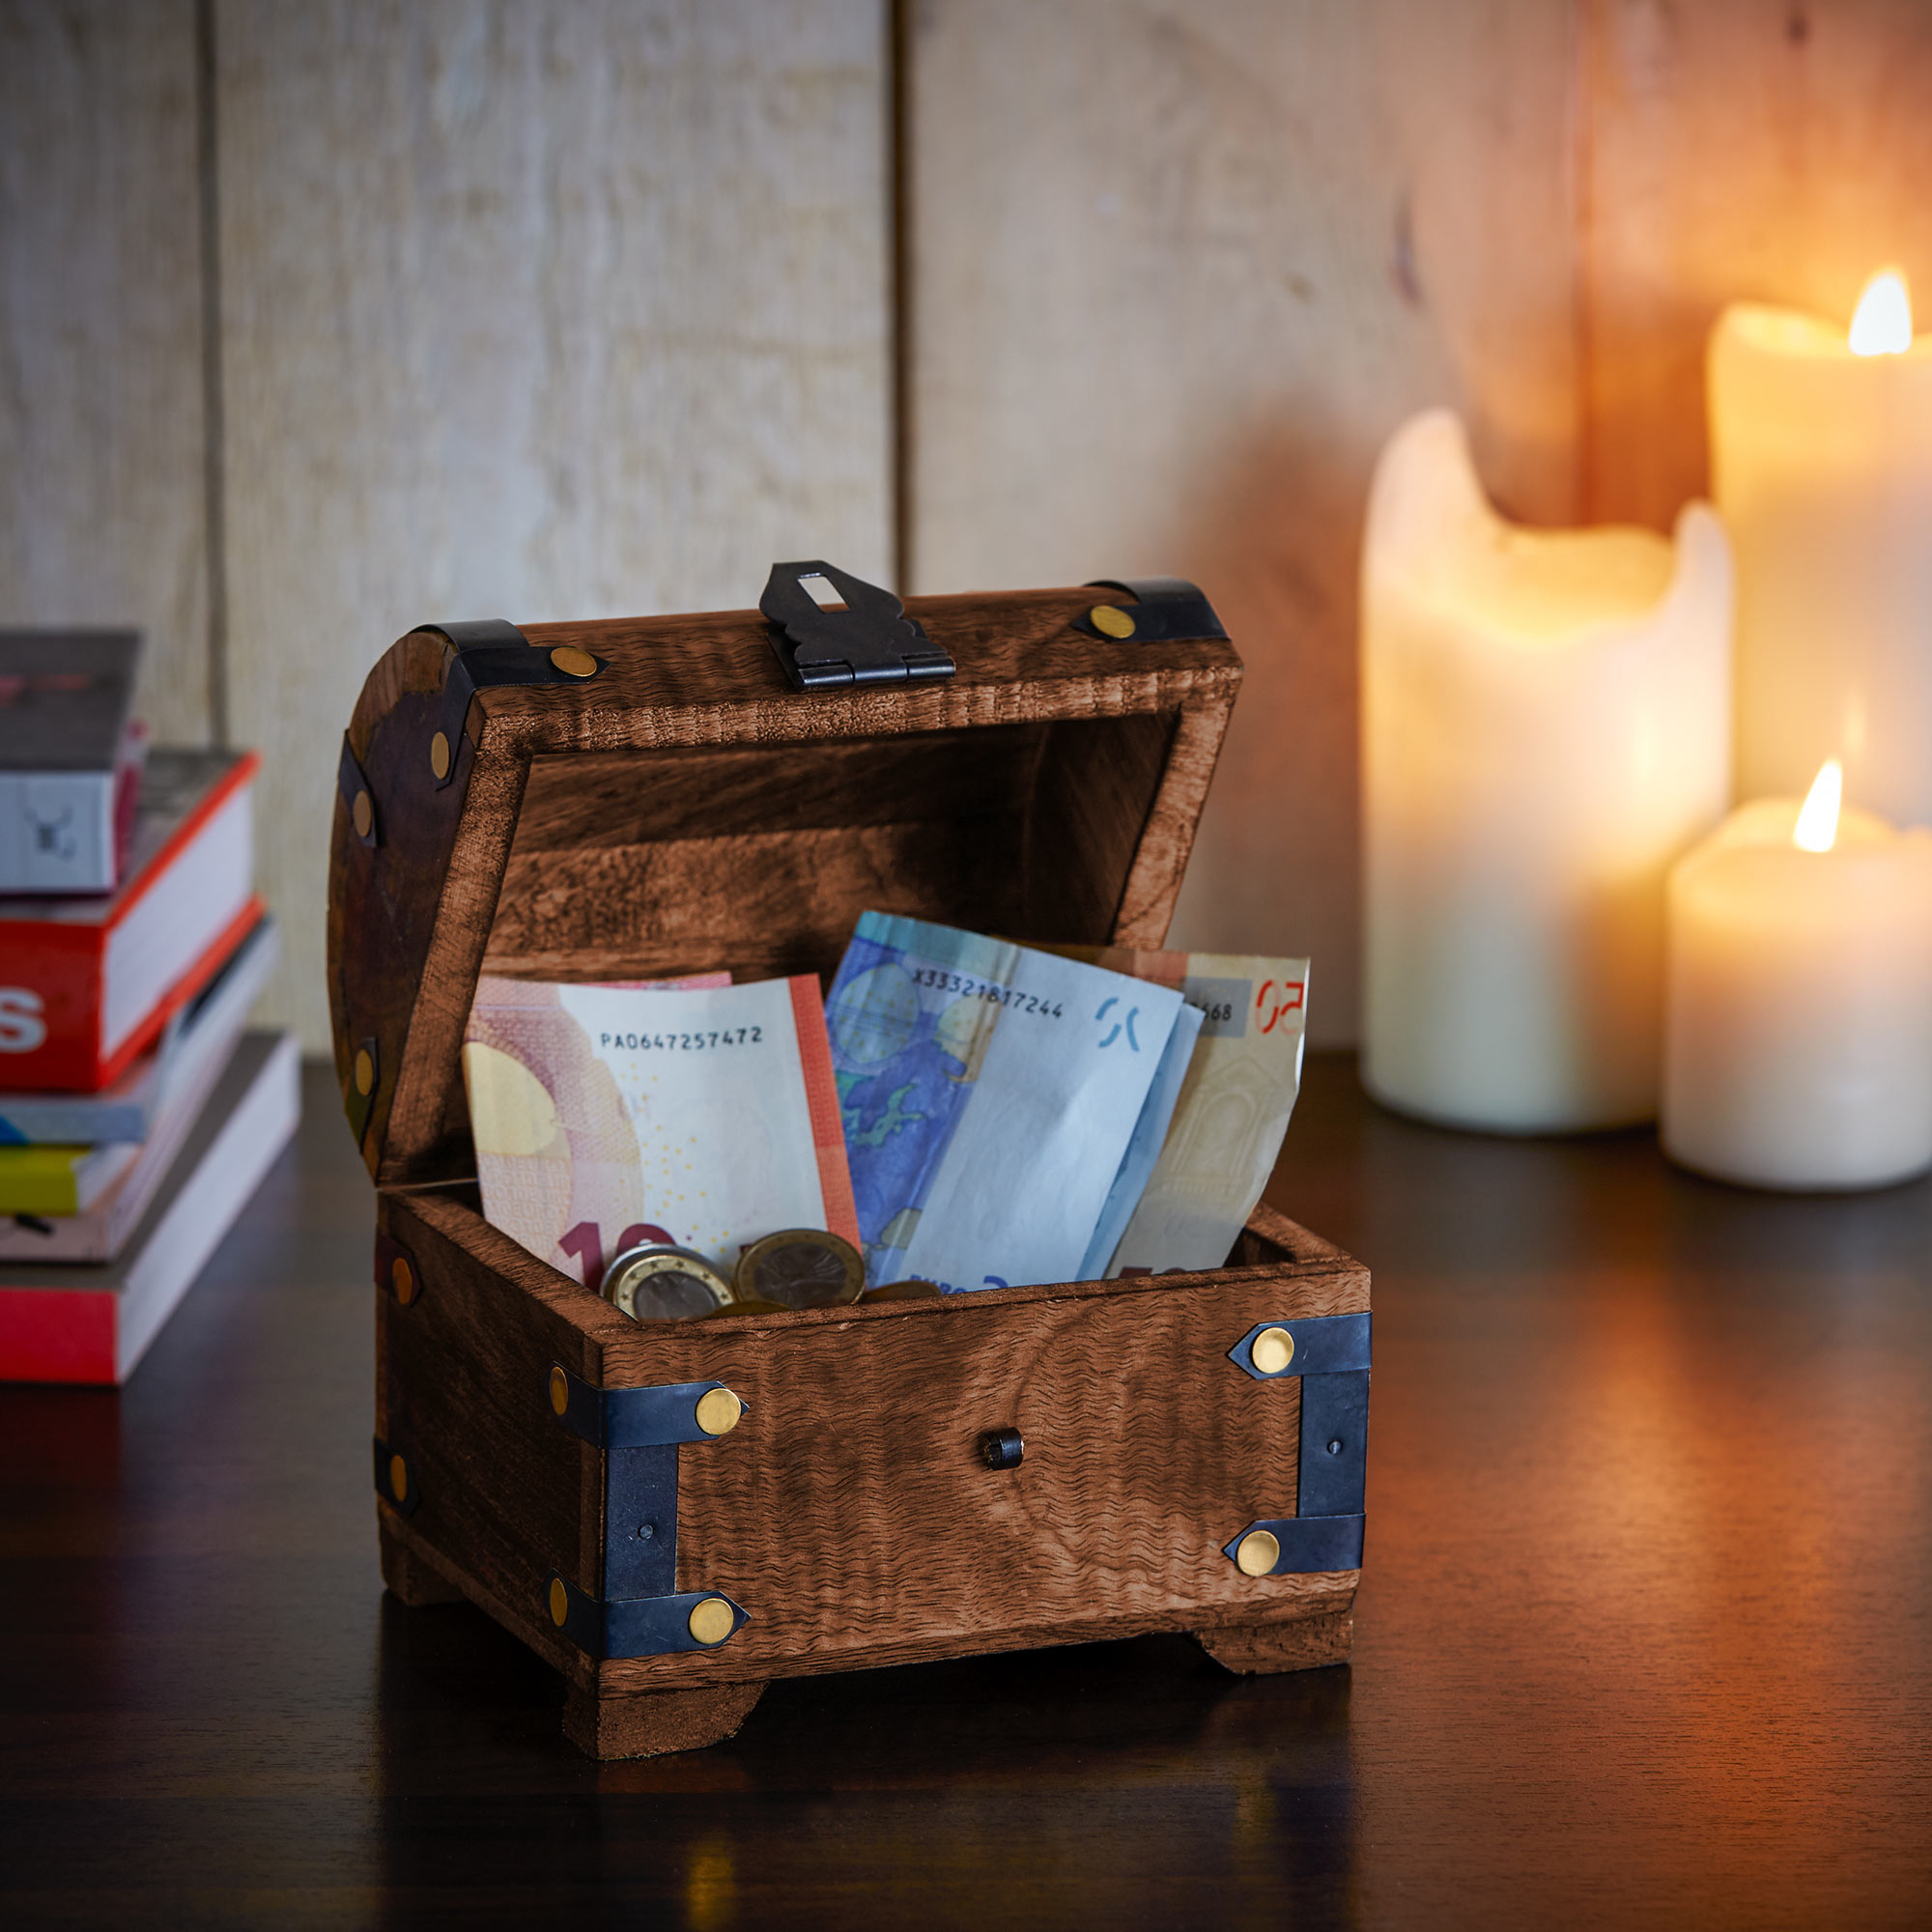 Dunkle Schatztruhe klein - Verpackung für Geldgeschenke, Geldgeschenk zur Hochzeit, Truhe, Geschenke für den Partner, Kiste